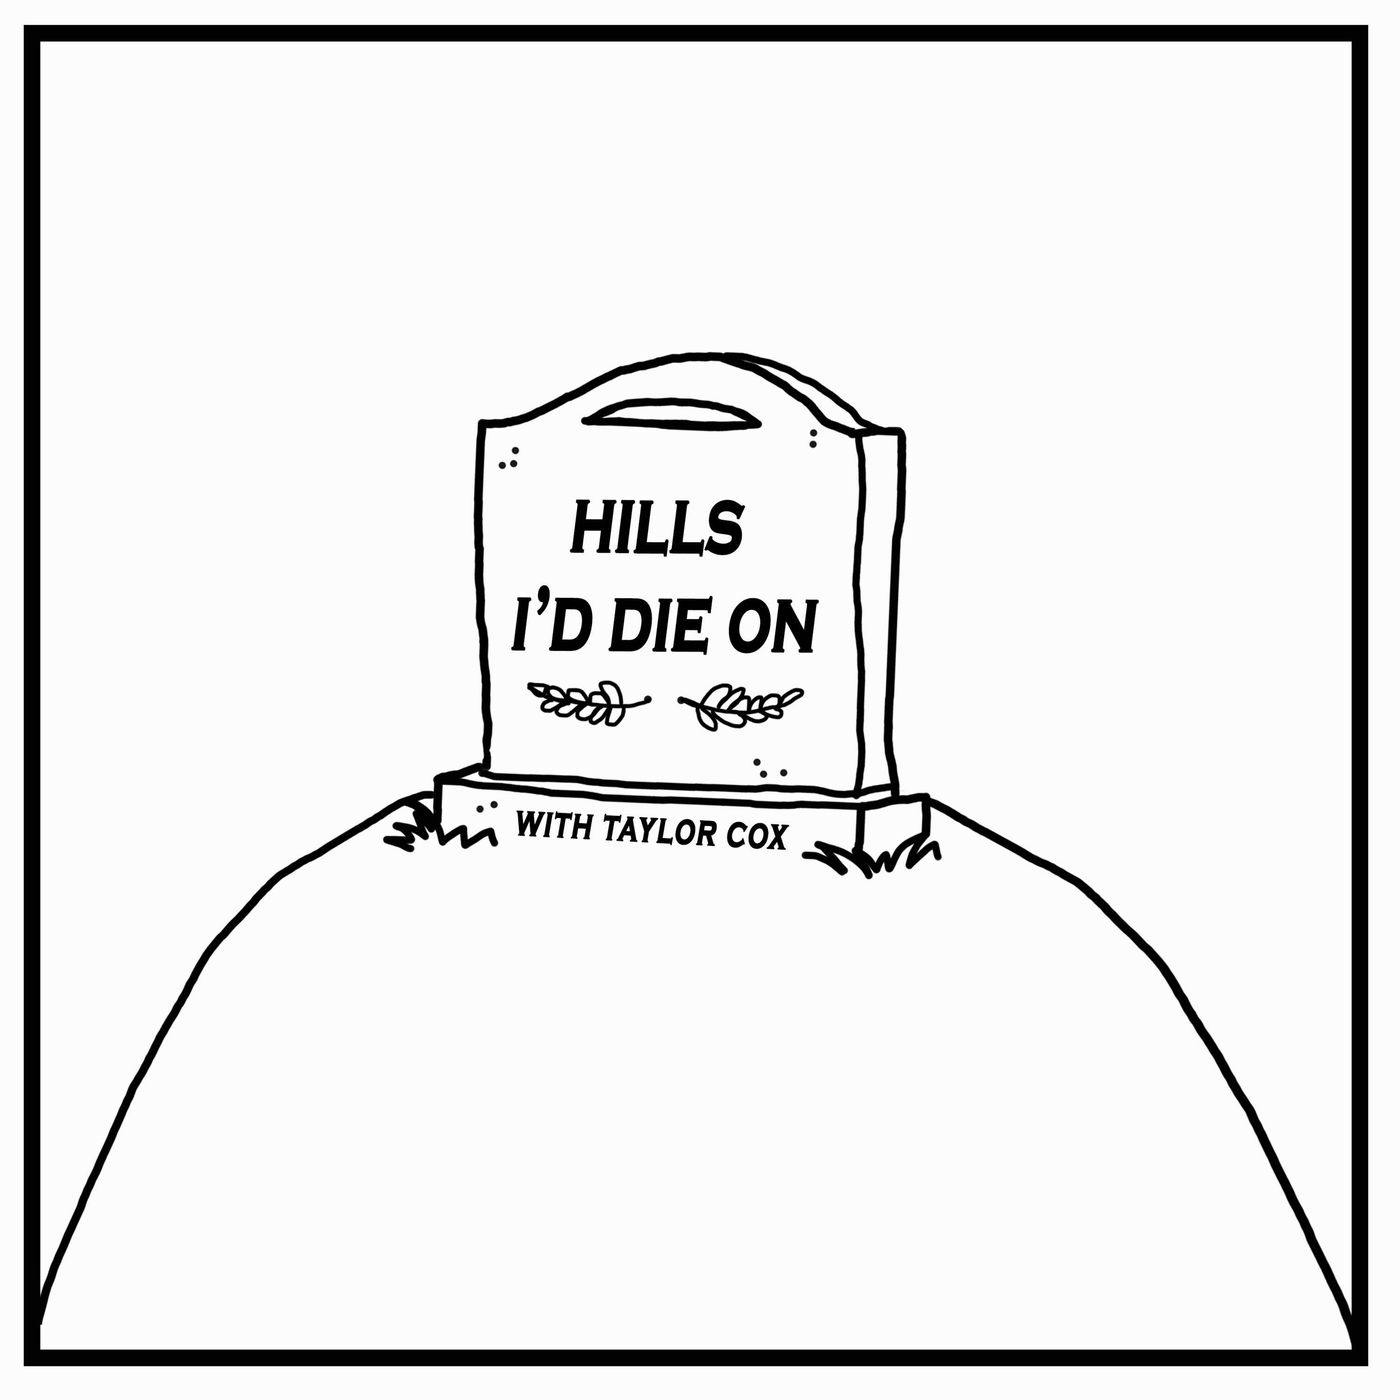 Coming Soon: Hills I'd Die On